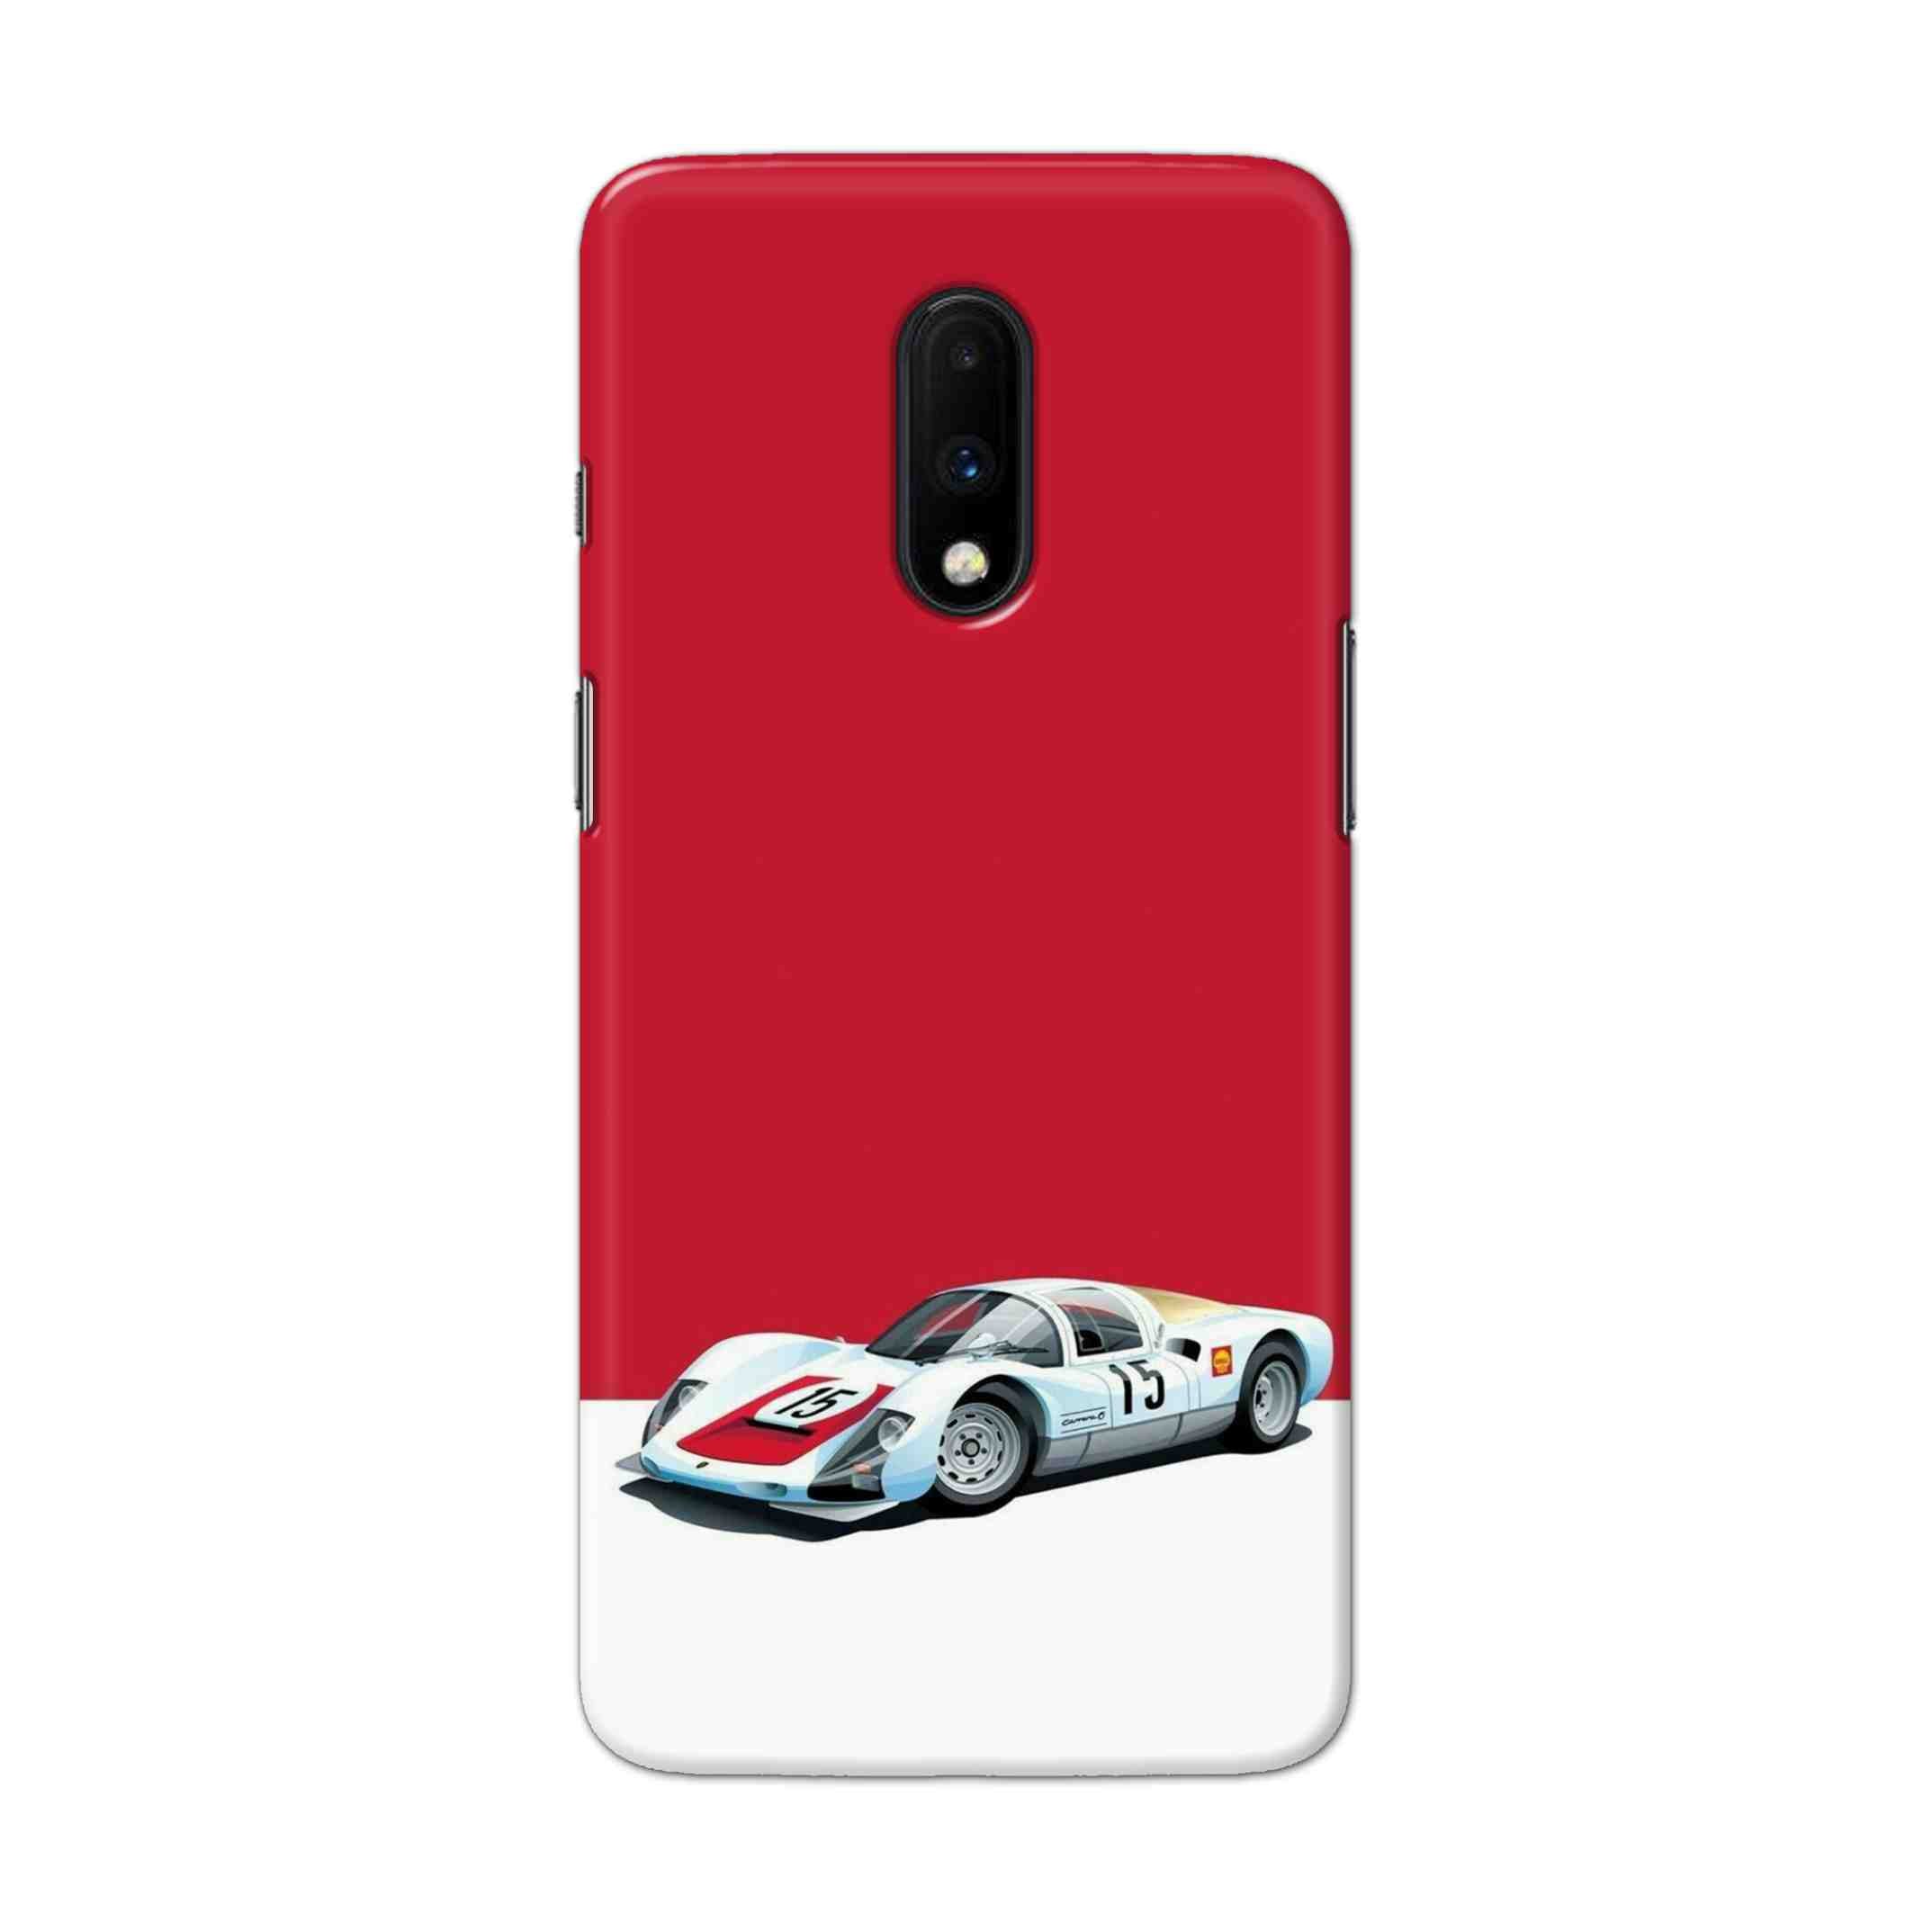 Buy Ferrari F15 Hard Back Mobile Phone Case Cover For OnePlus 7 Online